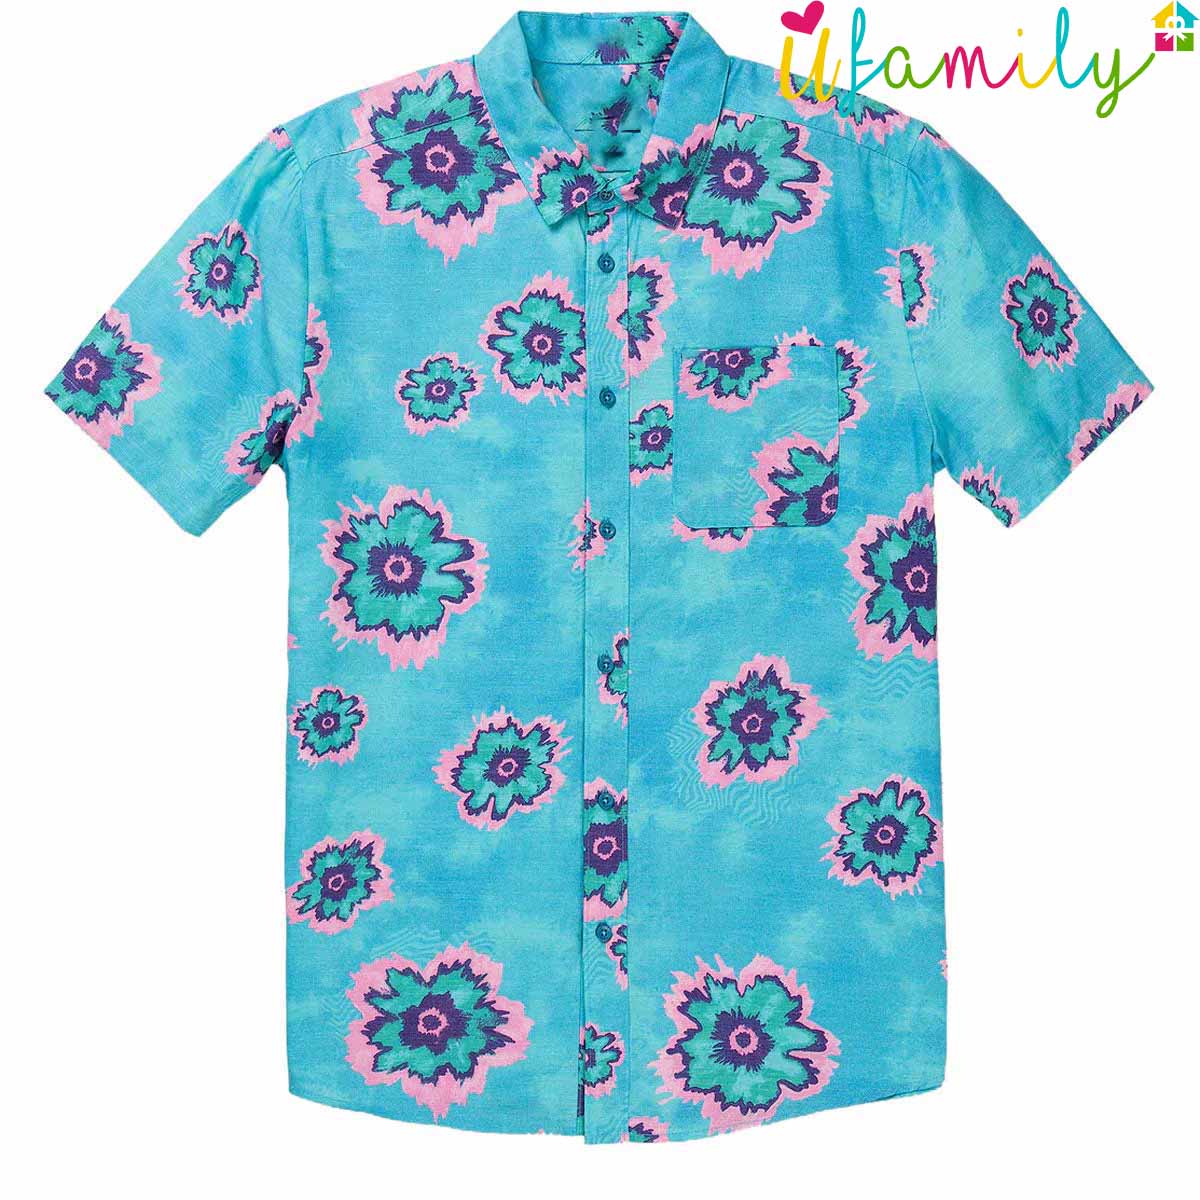 Blue Volcom Hawaii Shirt